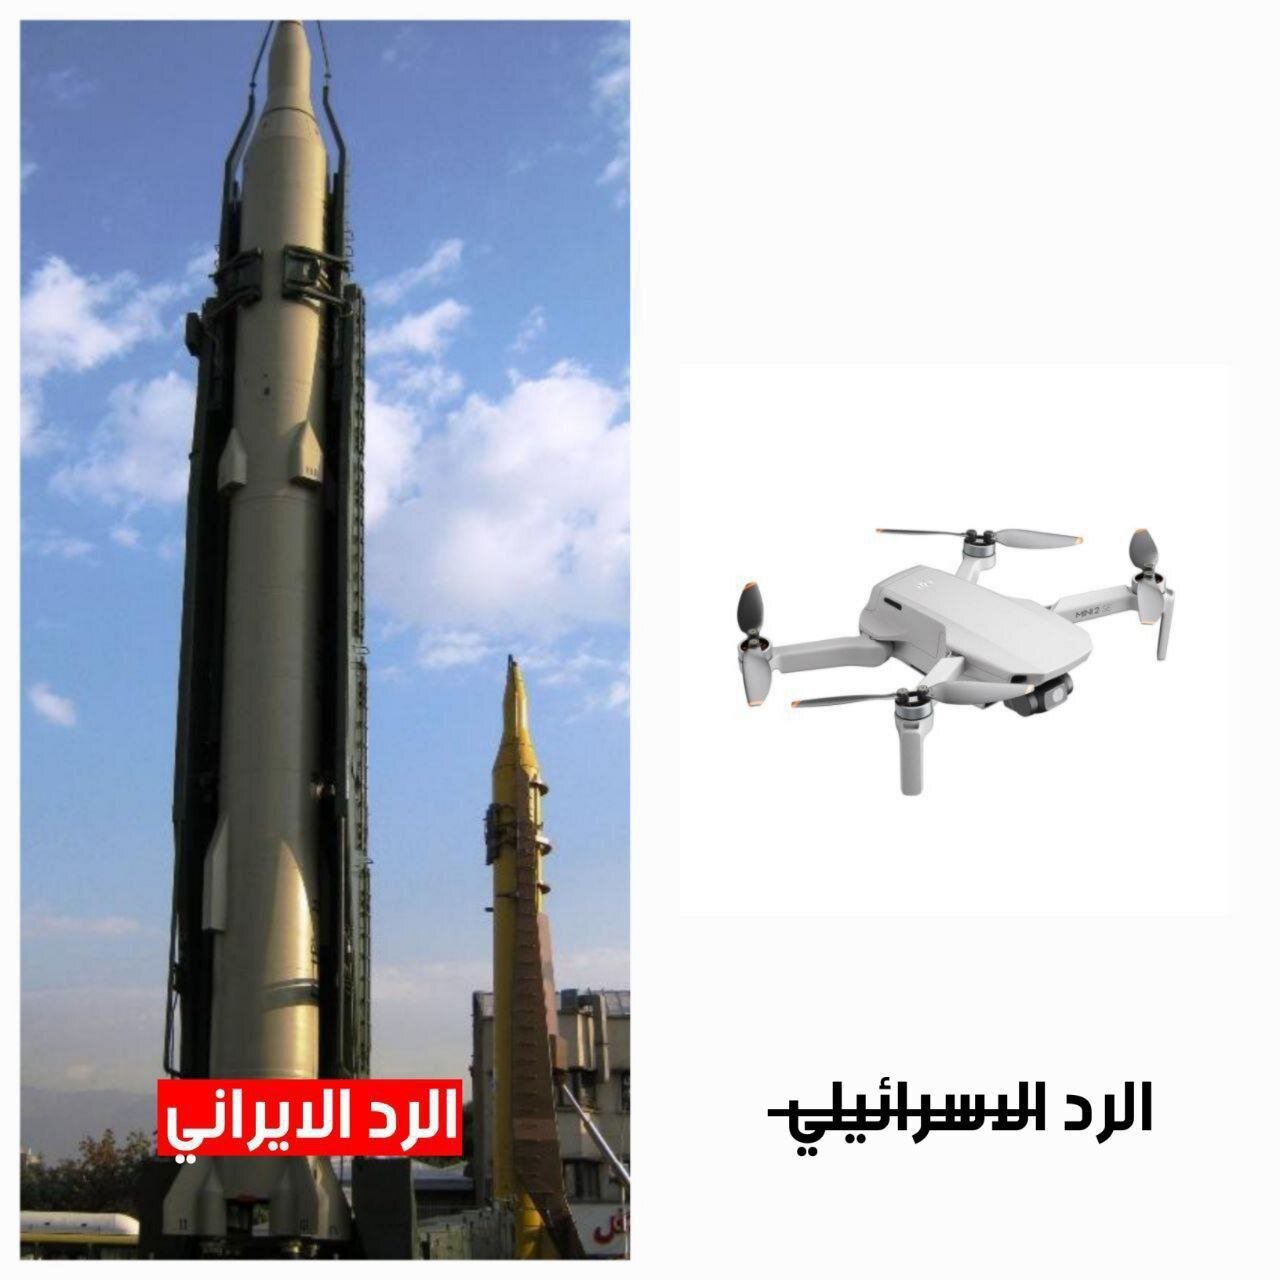 مقام ایرانی به رویترز: هیچگونه حمله موشکی به خاک ایران صورت نگرفته / المیادین: چیزی جز یک حباب رسانه ای نبود / تمسخر اسرائیل از سوی رسانه های عربی 2